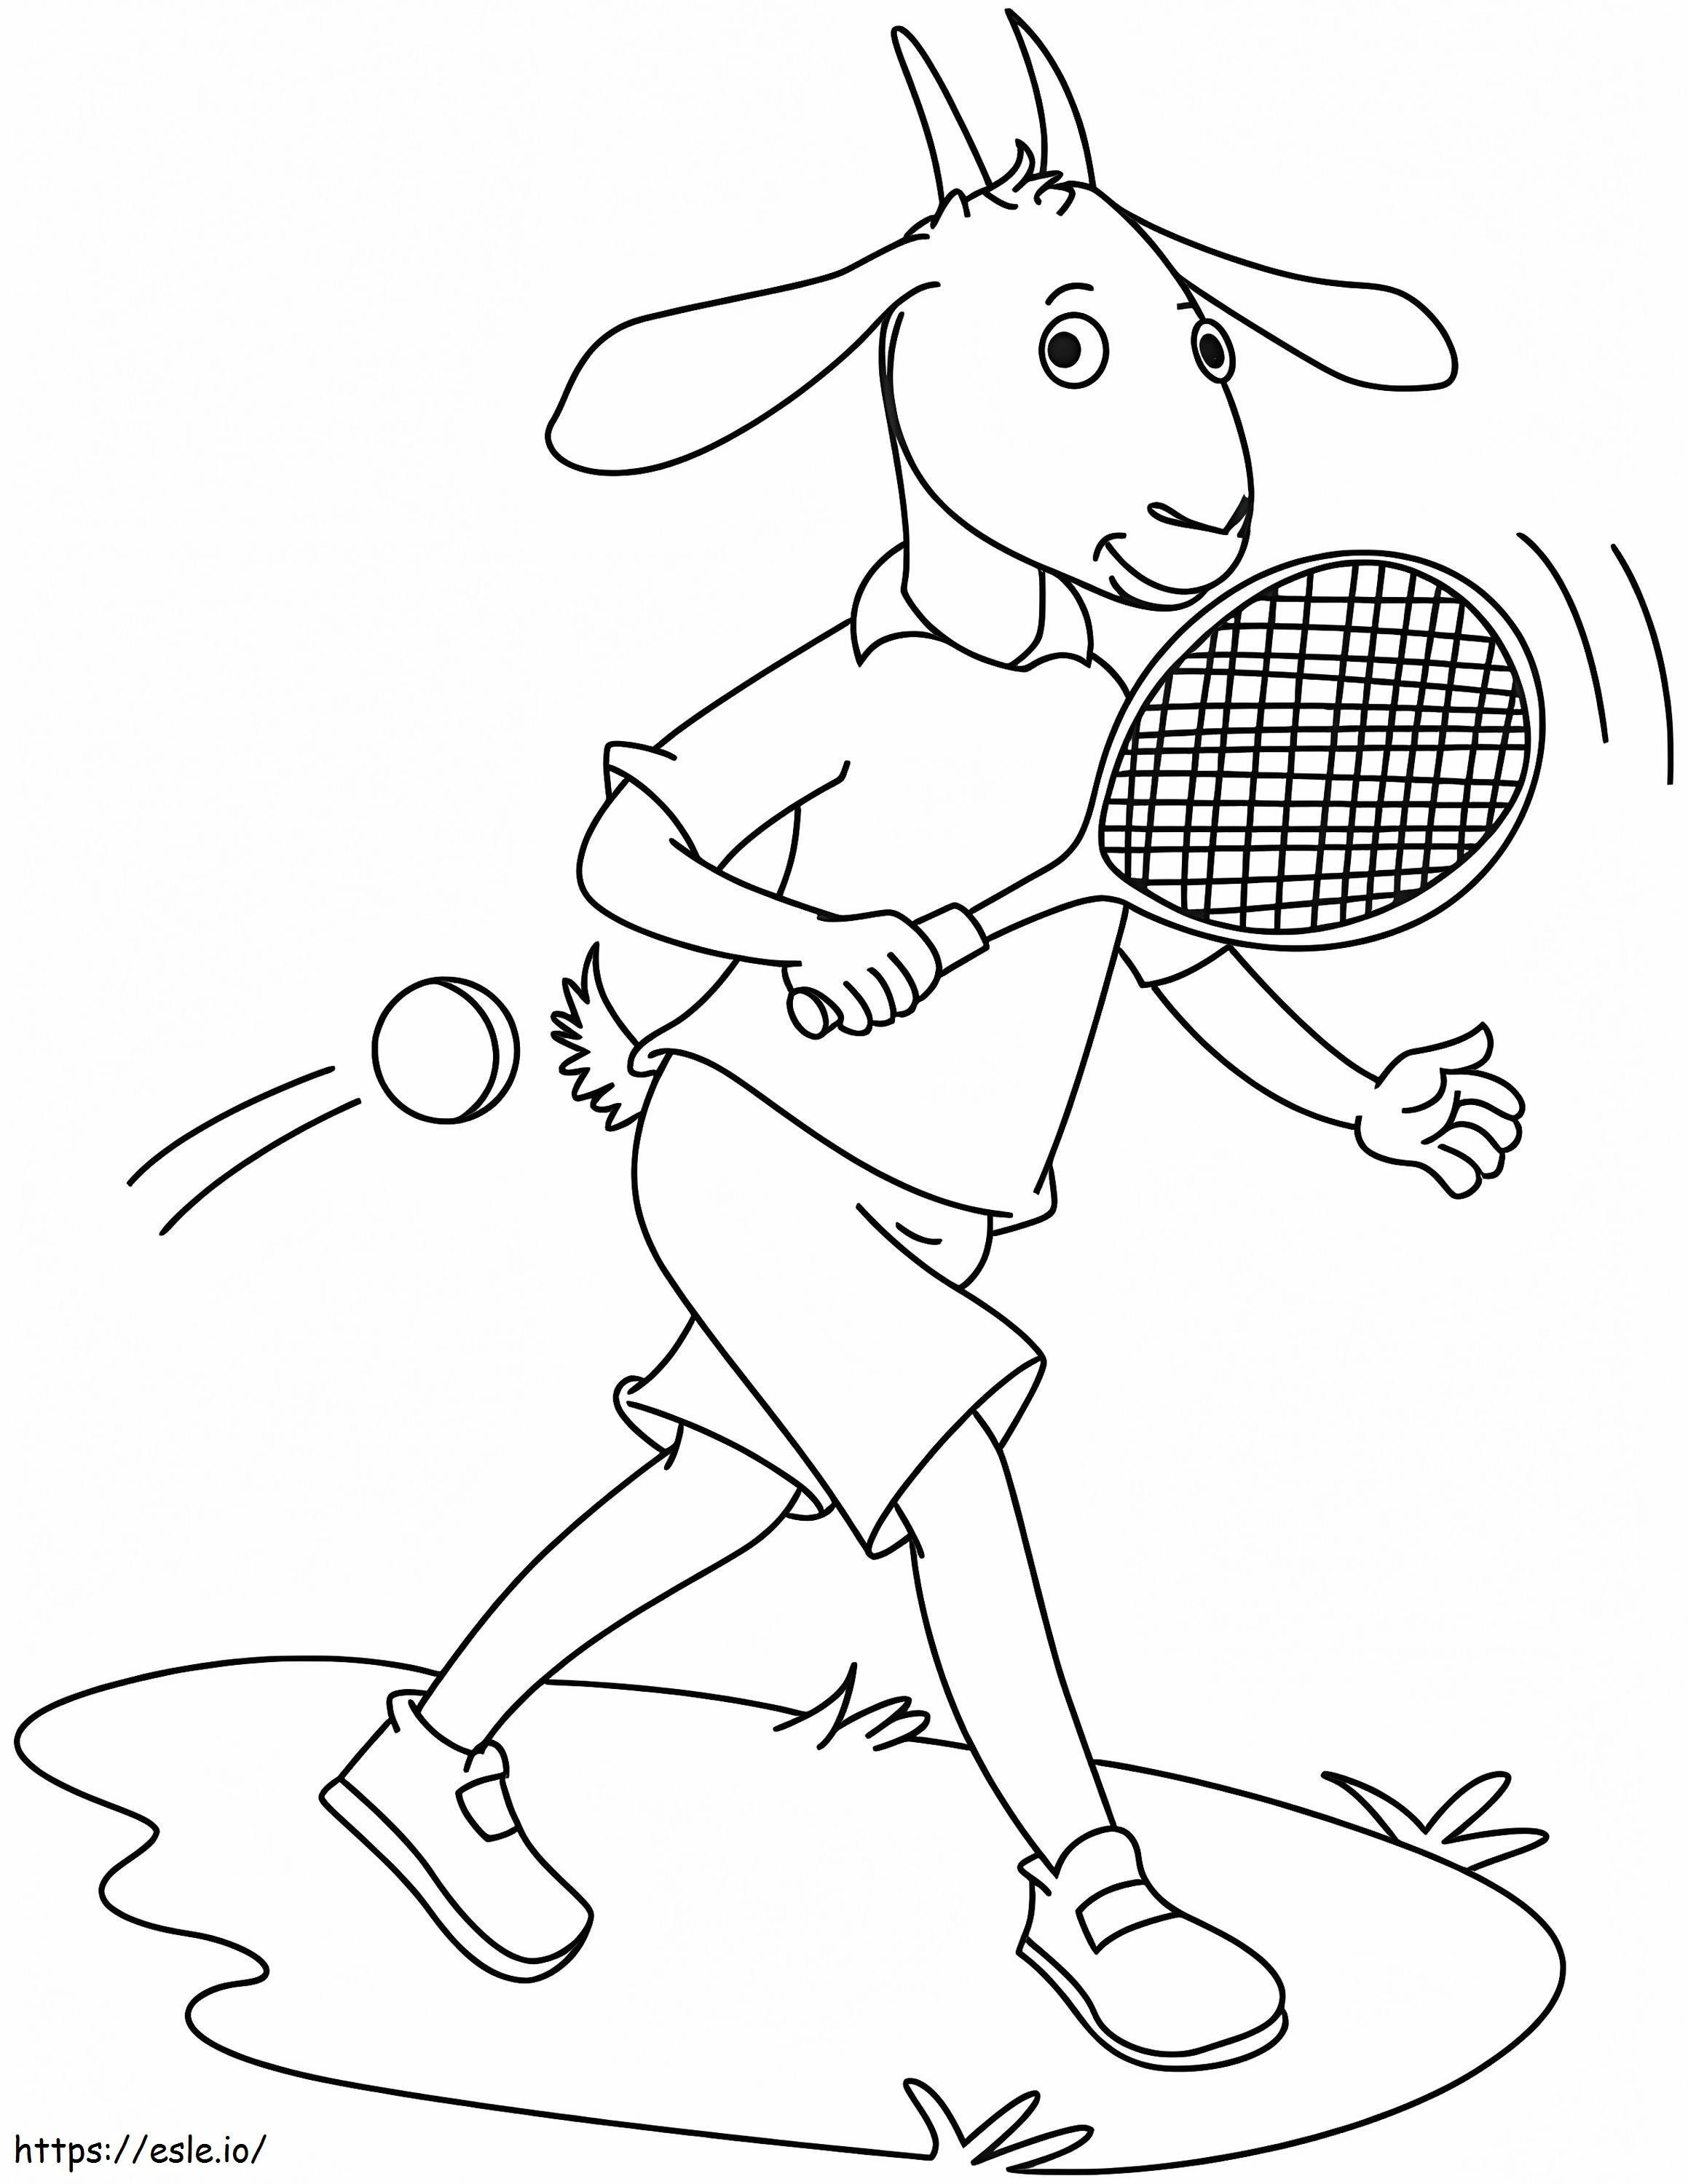 Cabra jugando al tenis para colorear